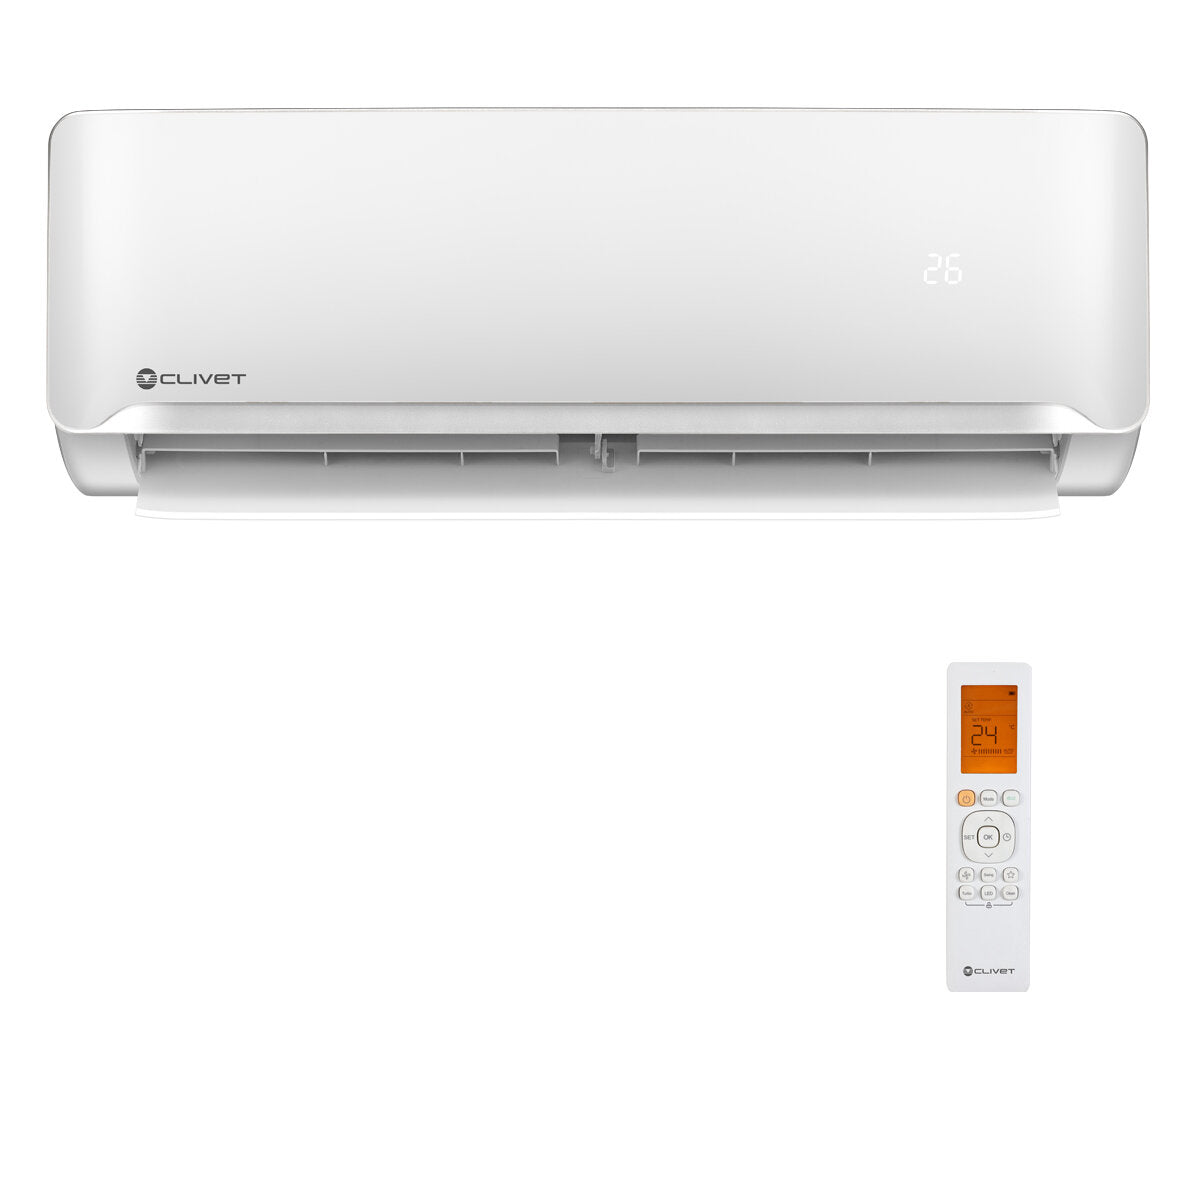 Air conditioner Clivet Essential 2 penta split 9000 + 9000 + 12000 + 12000 + 12000 BTU inverter A ++ outdoor unit 12.3 kW